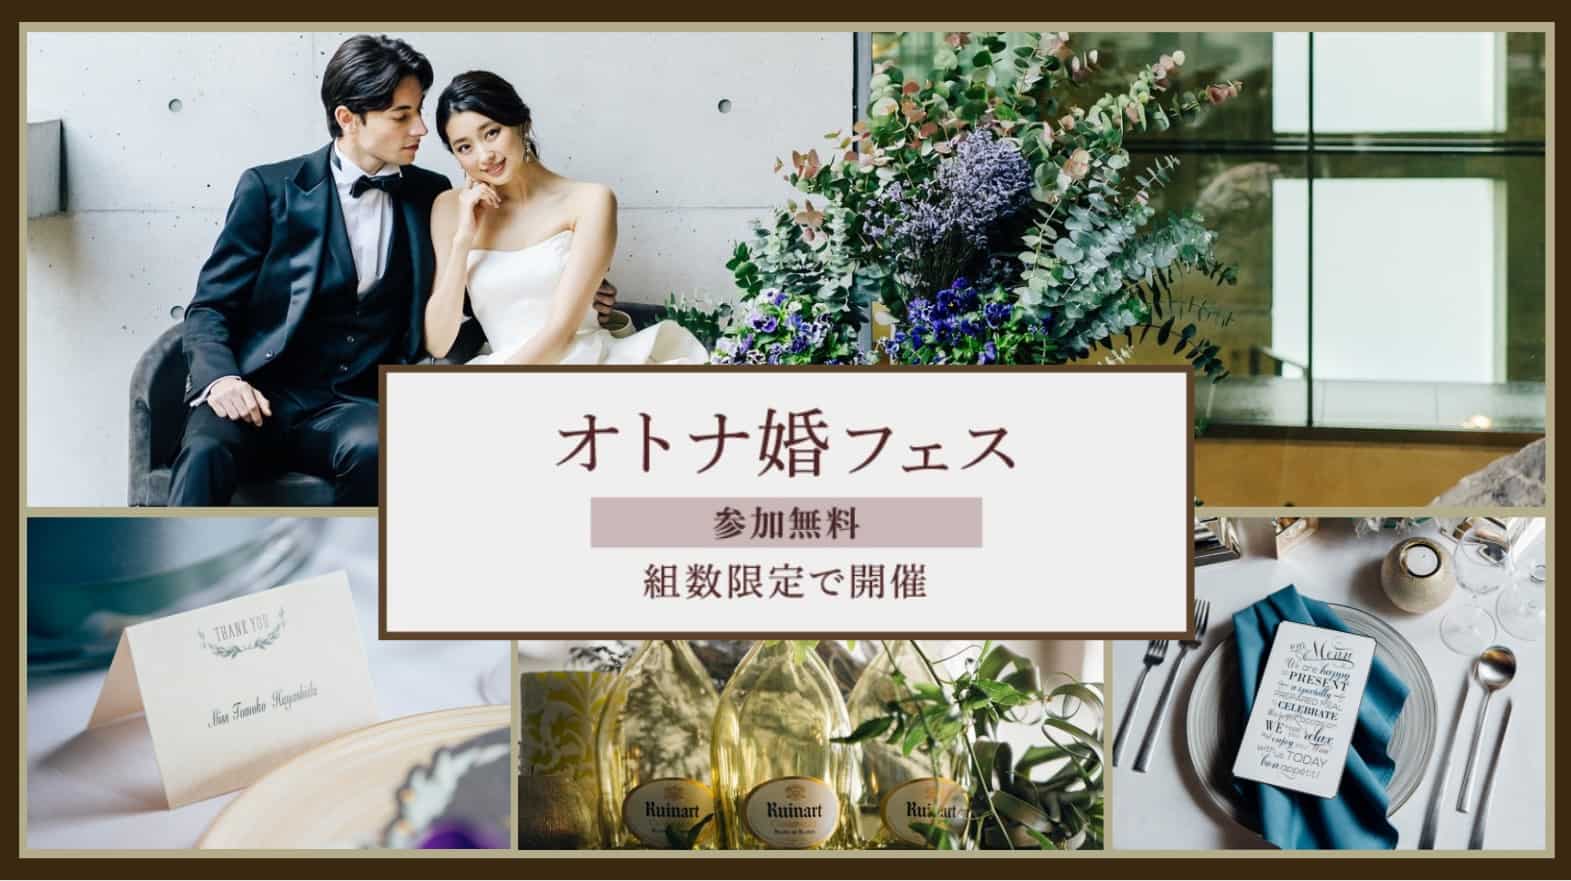 11月組数限定 センス溢れるこだわりの結婚式場を探している人へ オトナ婚フェス が大阪と京都で開催決定 結婚式準備はウェディングニュース